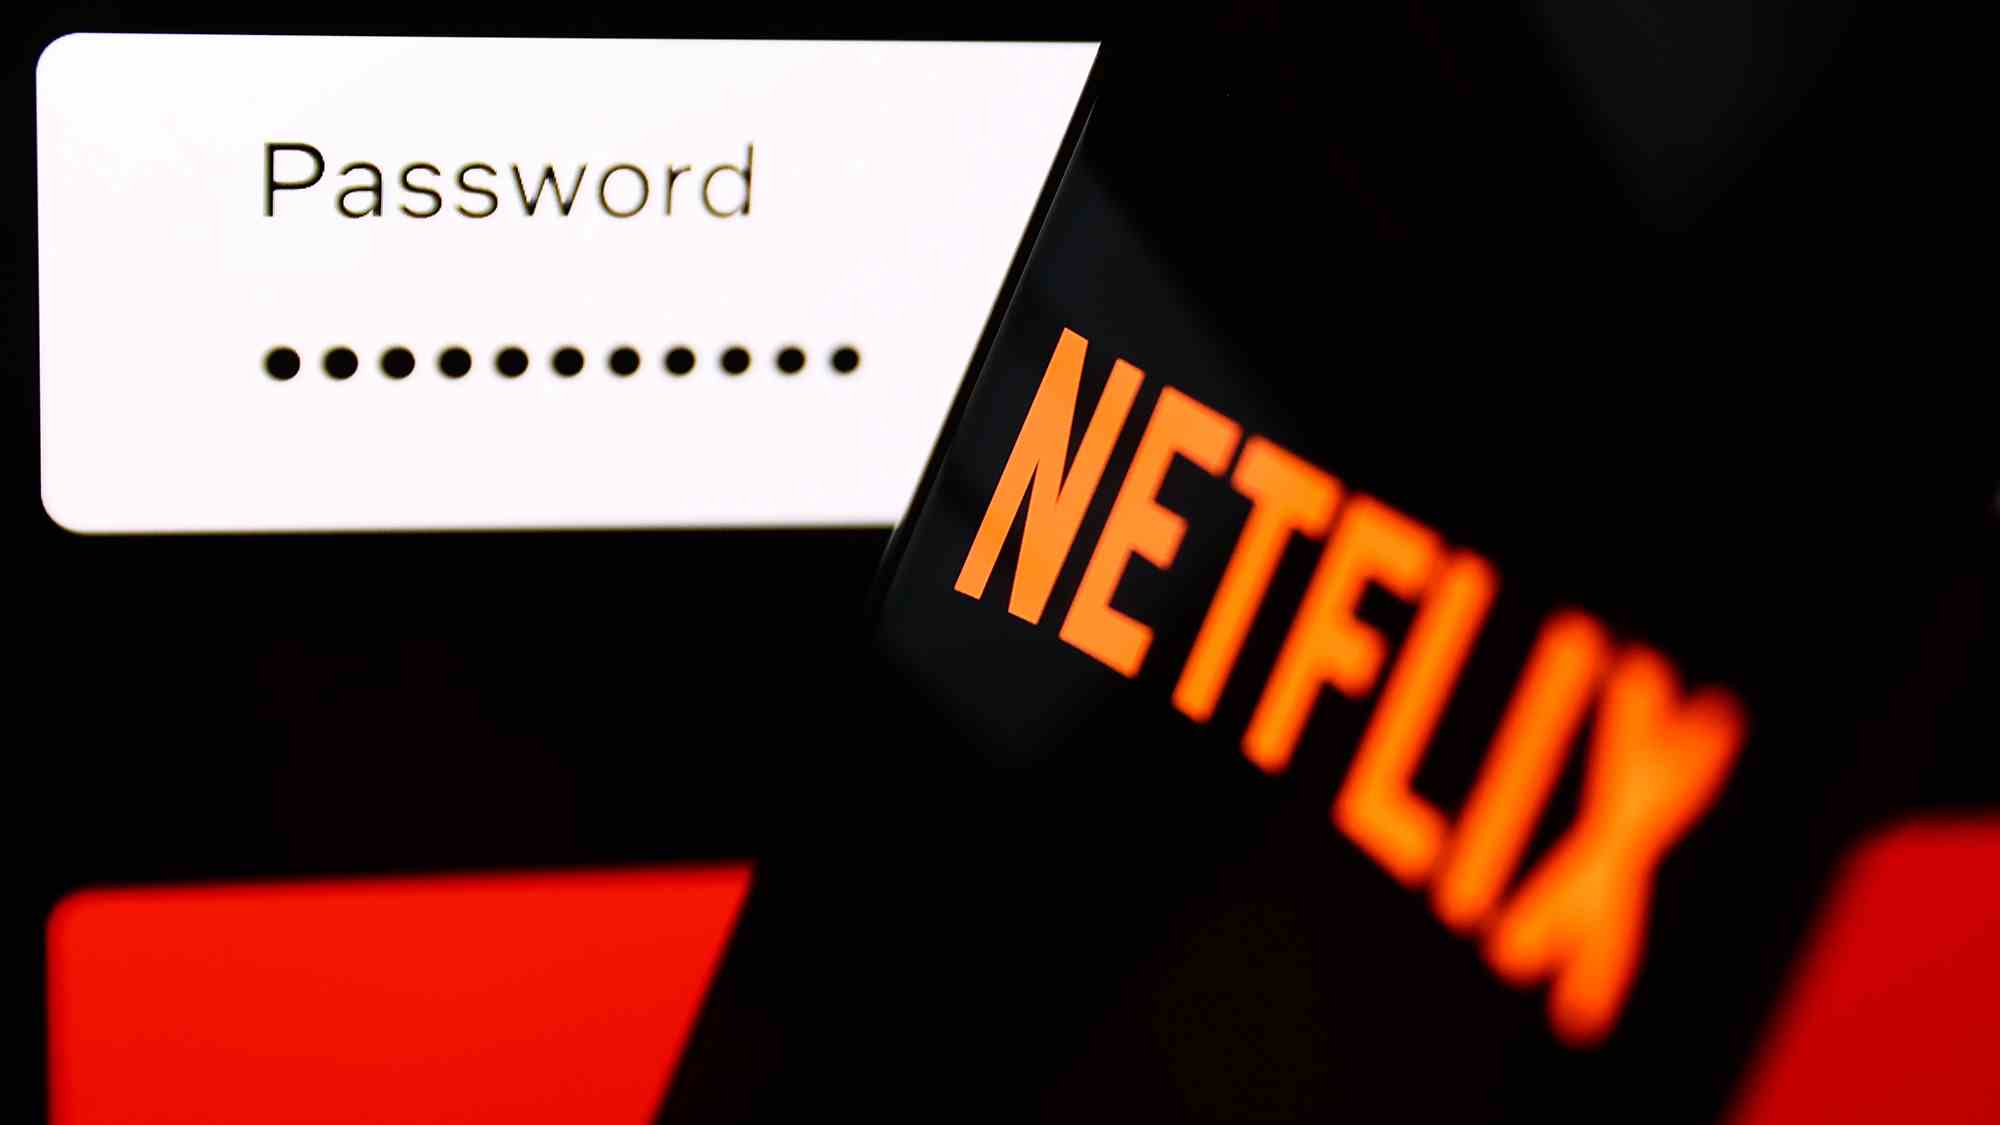 (R à L) Le logo Netflix sur un téléphone devant un champ de mot de passe sur un écran.